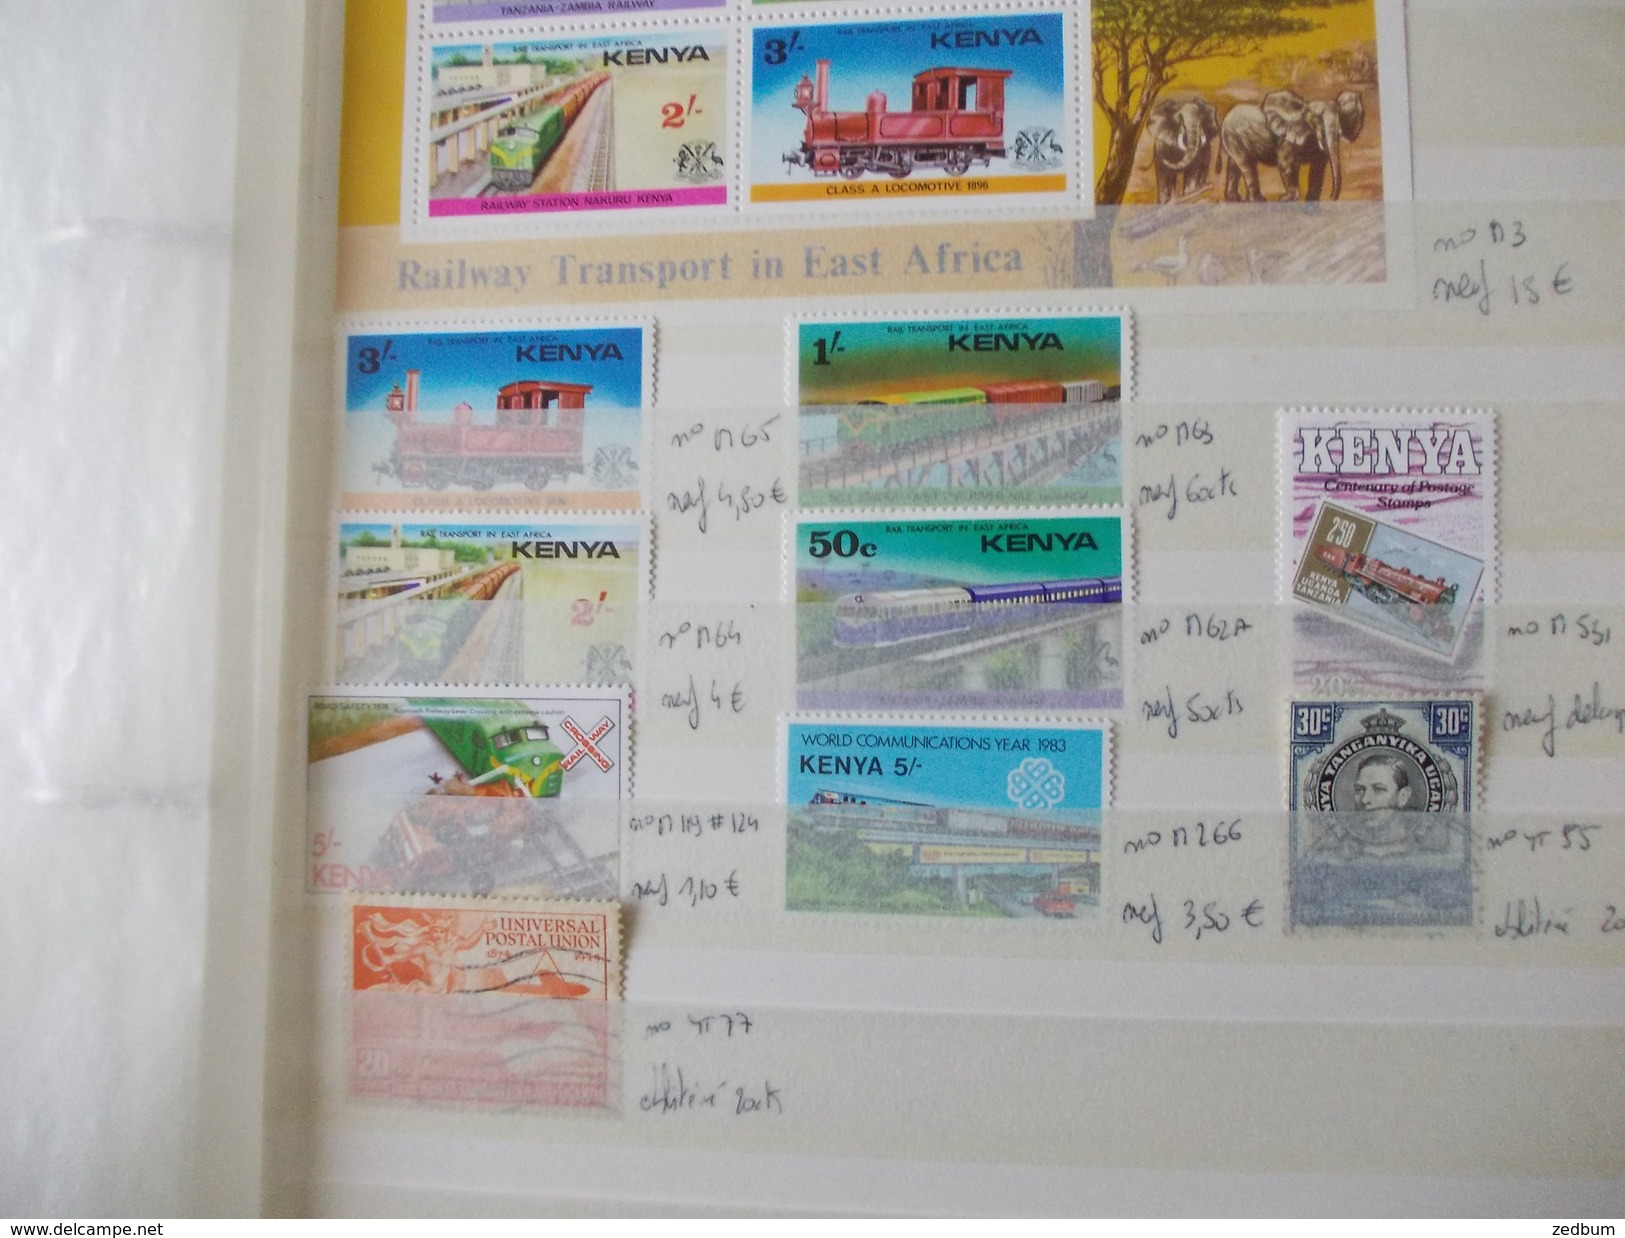 ALBUM 6 collection de timbres avec pour thème le chemin de fer train de tout pays valeur 344.55 &euro;